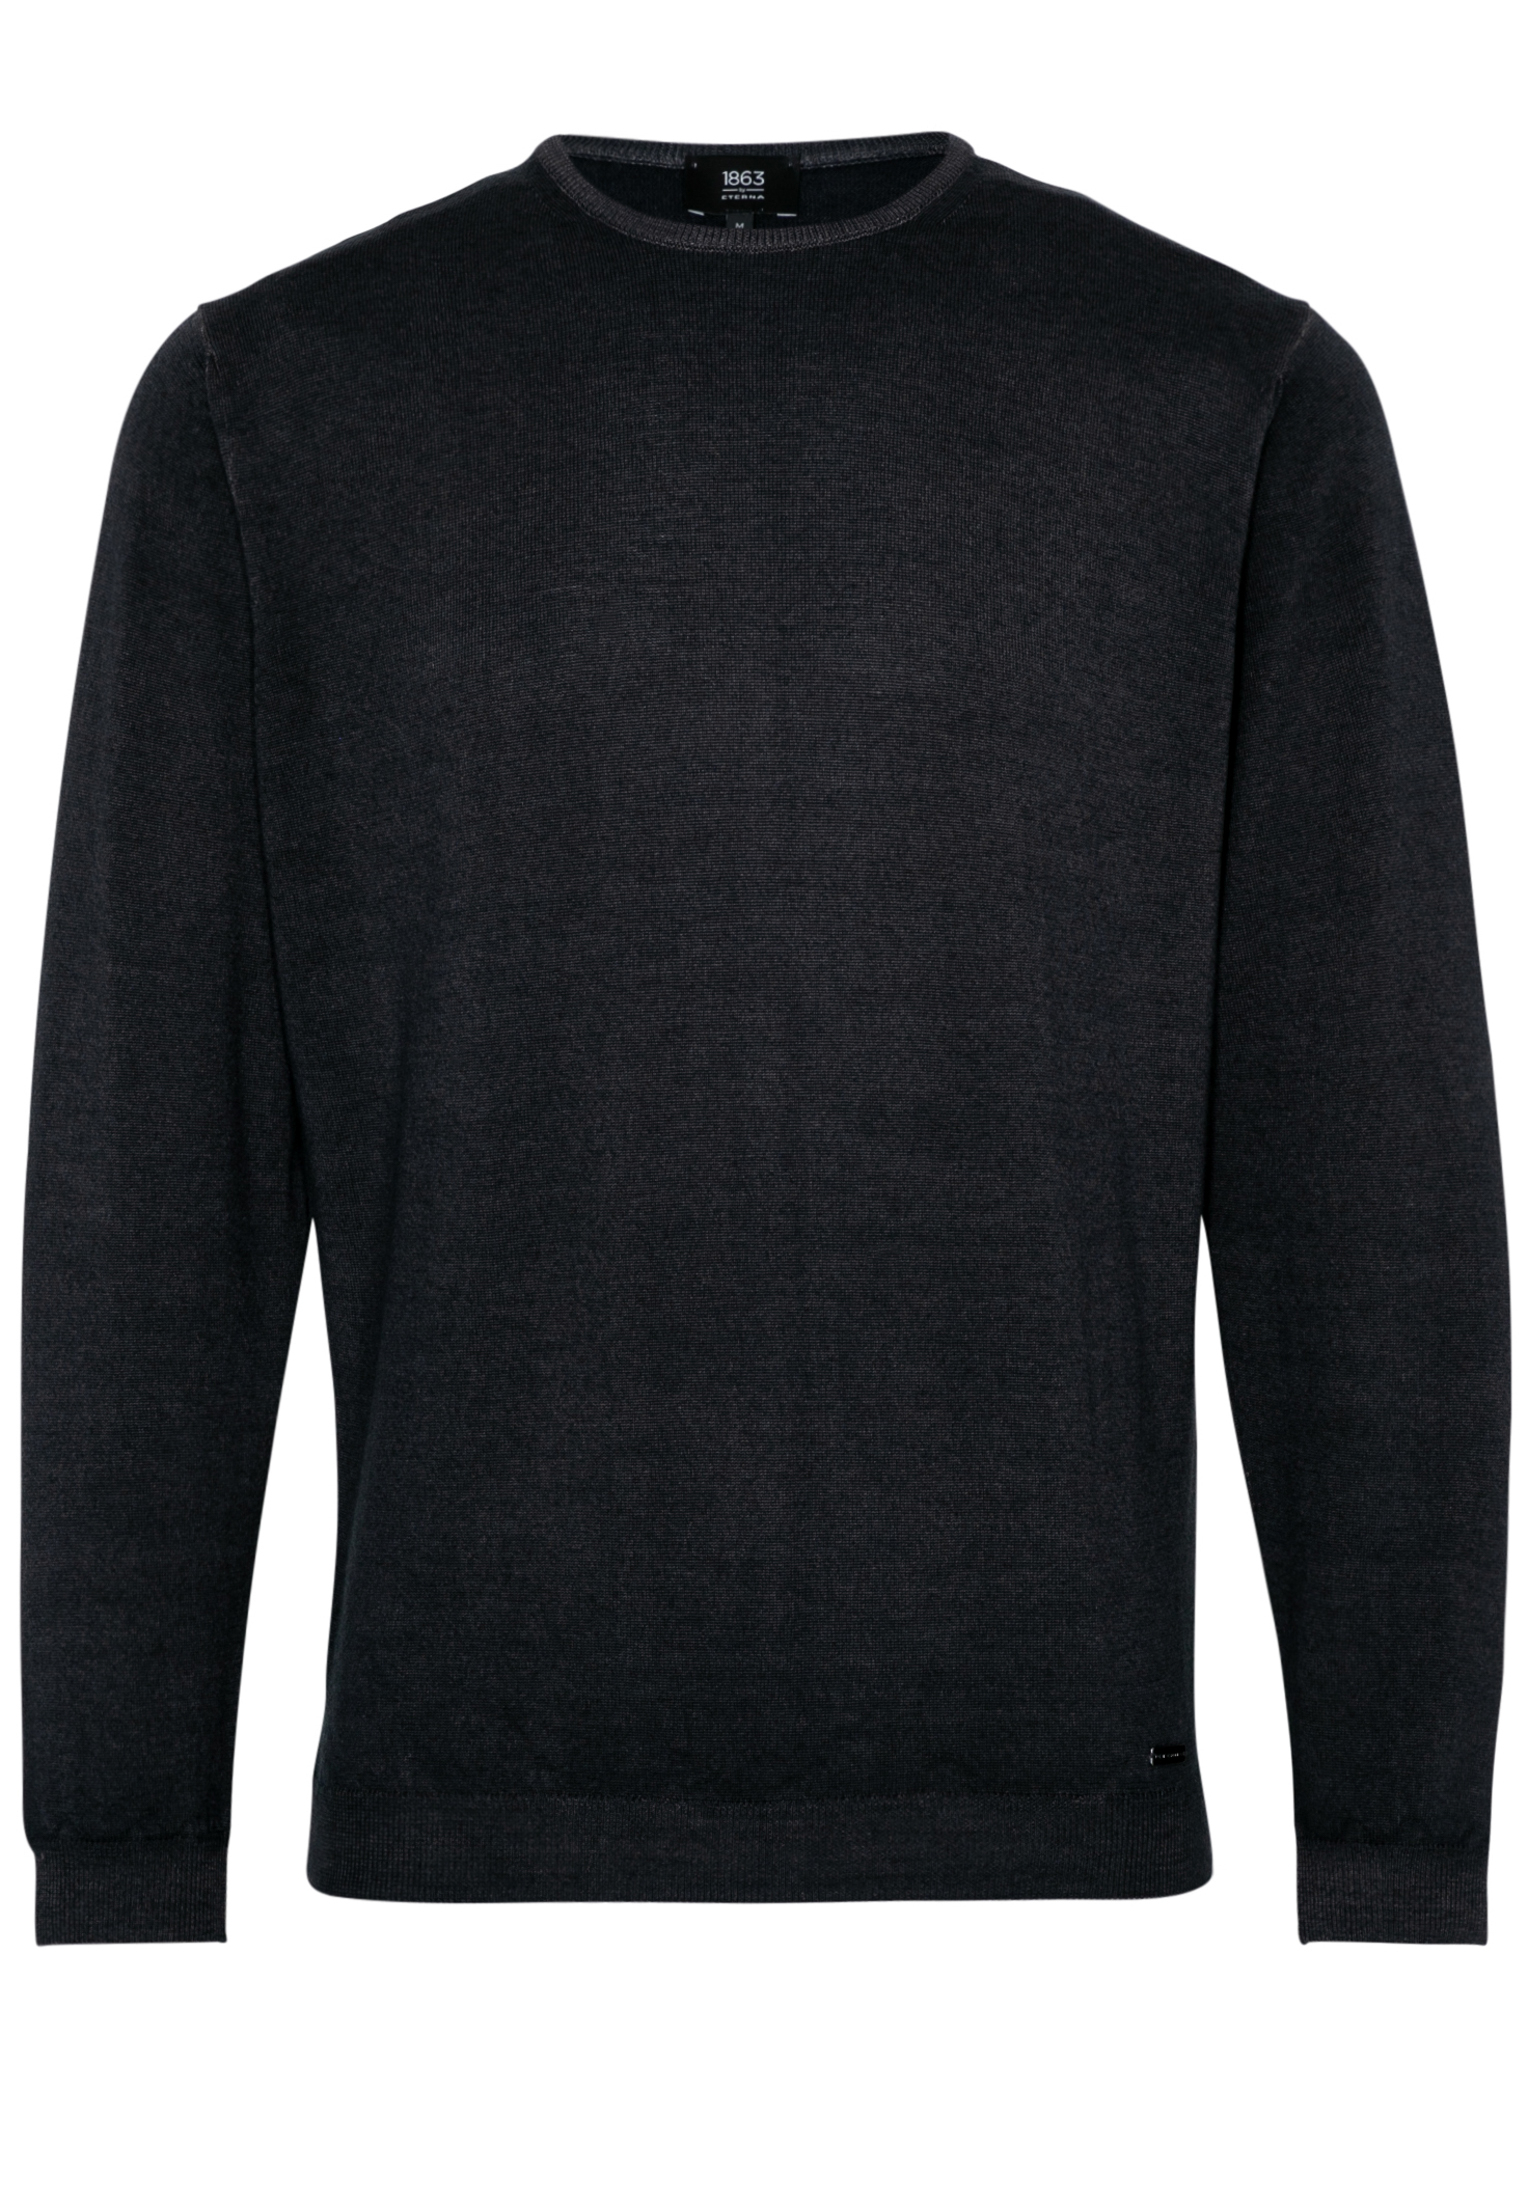 ETERNA plain men’s knitted crew neck sweater